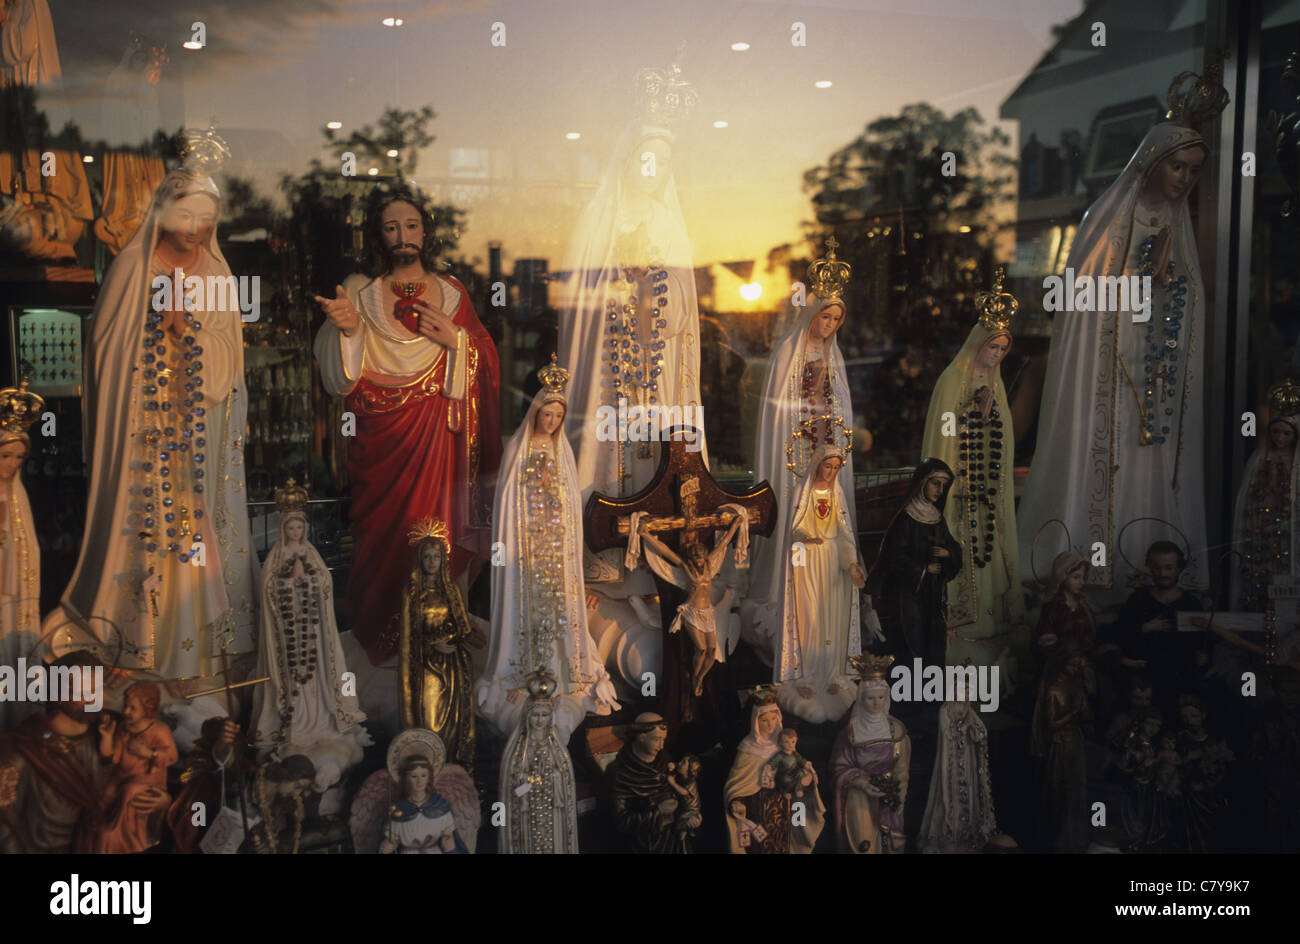 Portugal, Fatima, religious statues in window shop Stock Photo